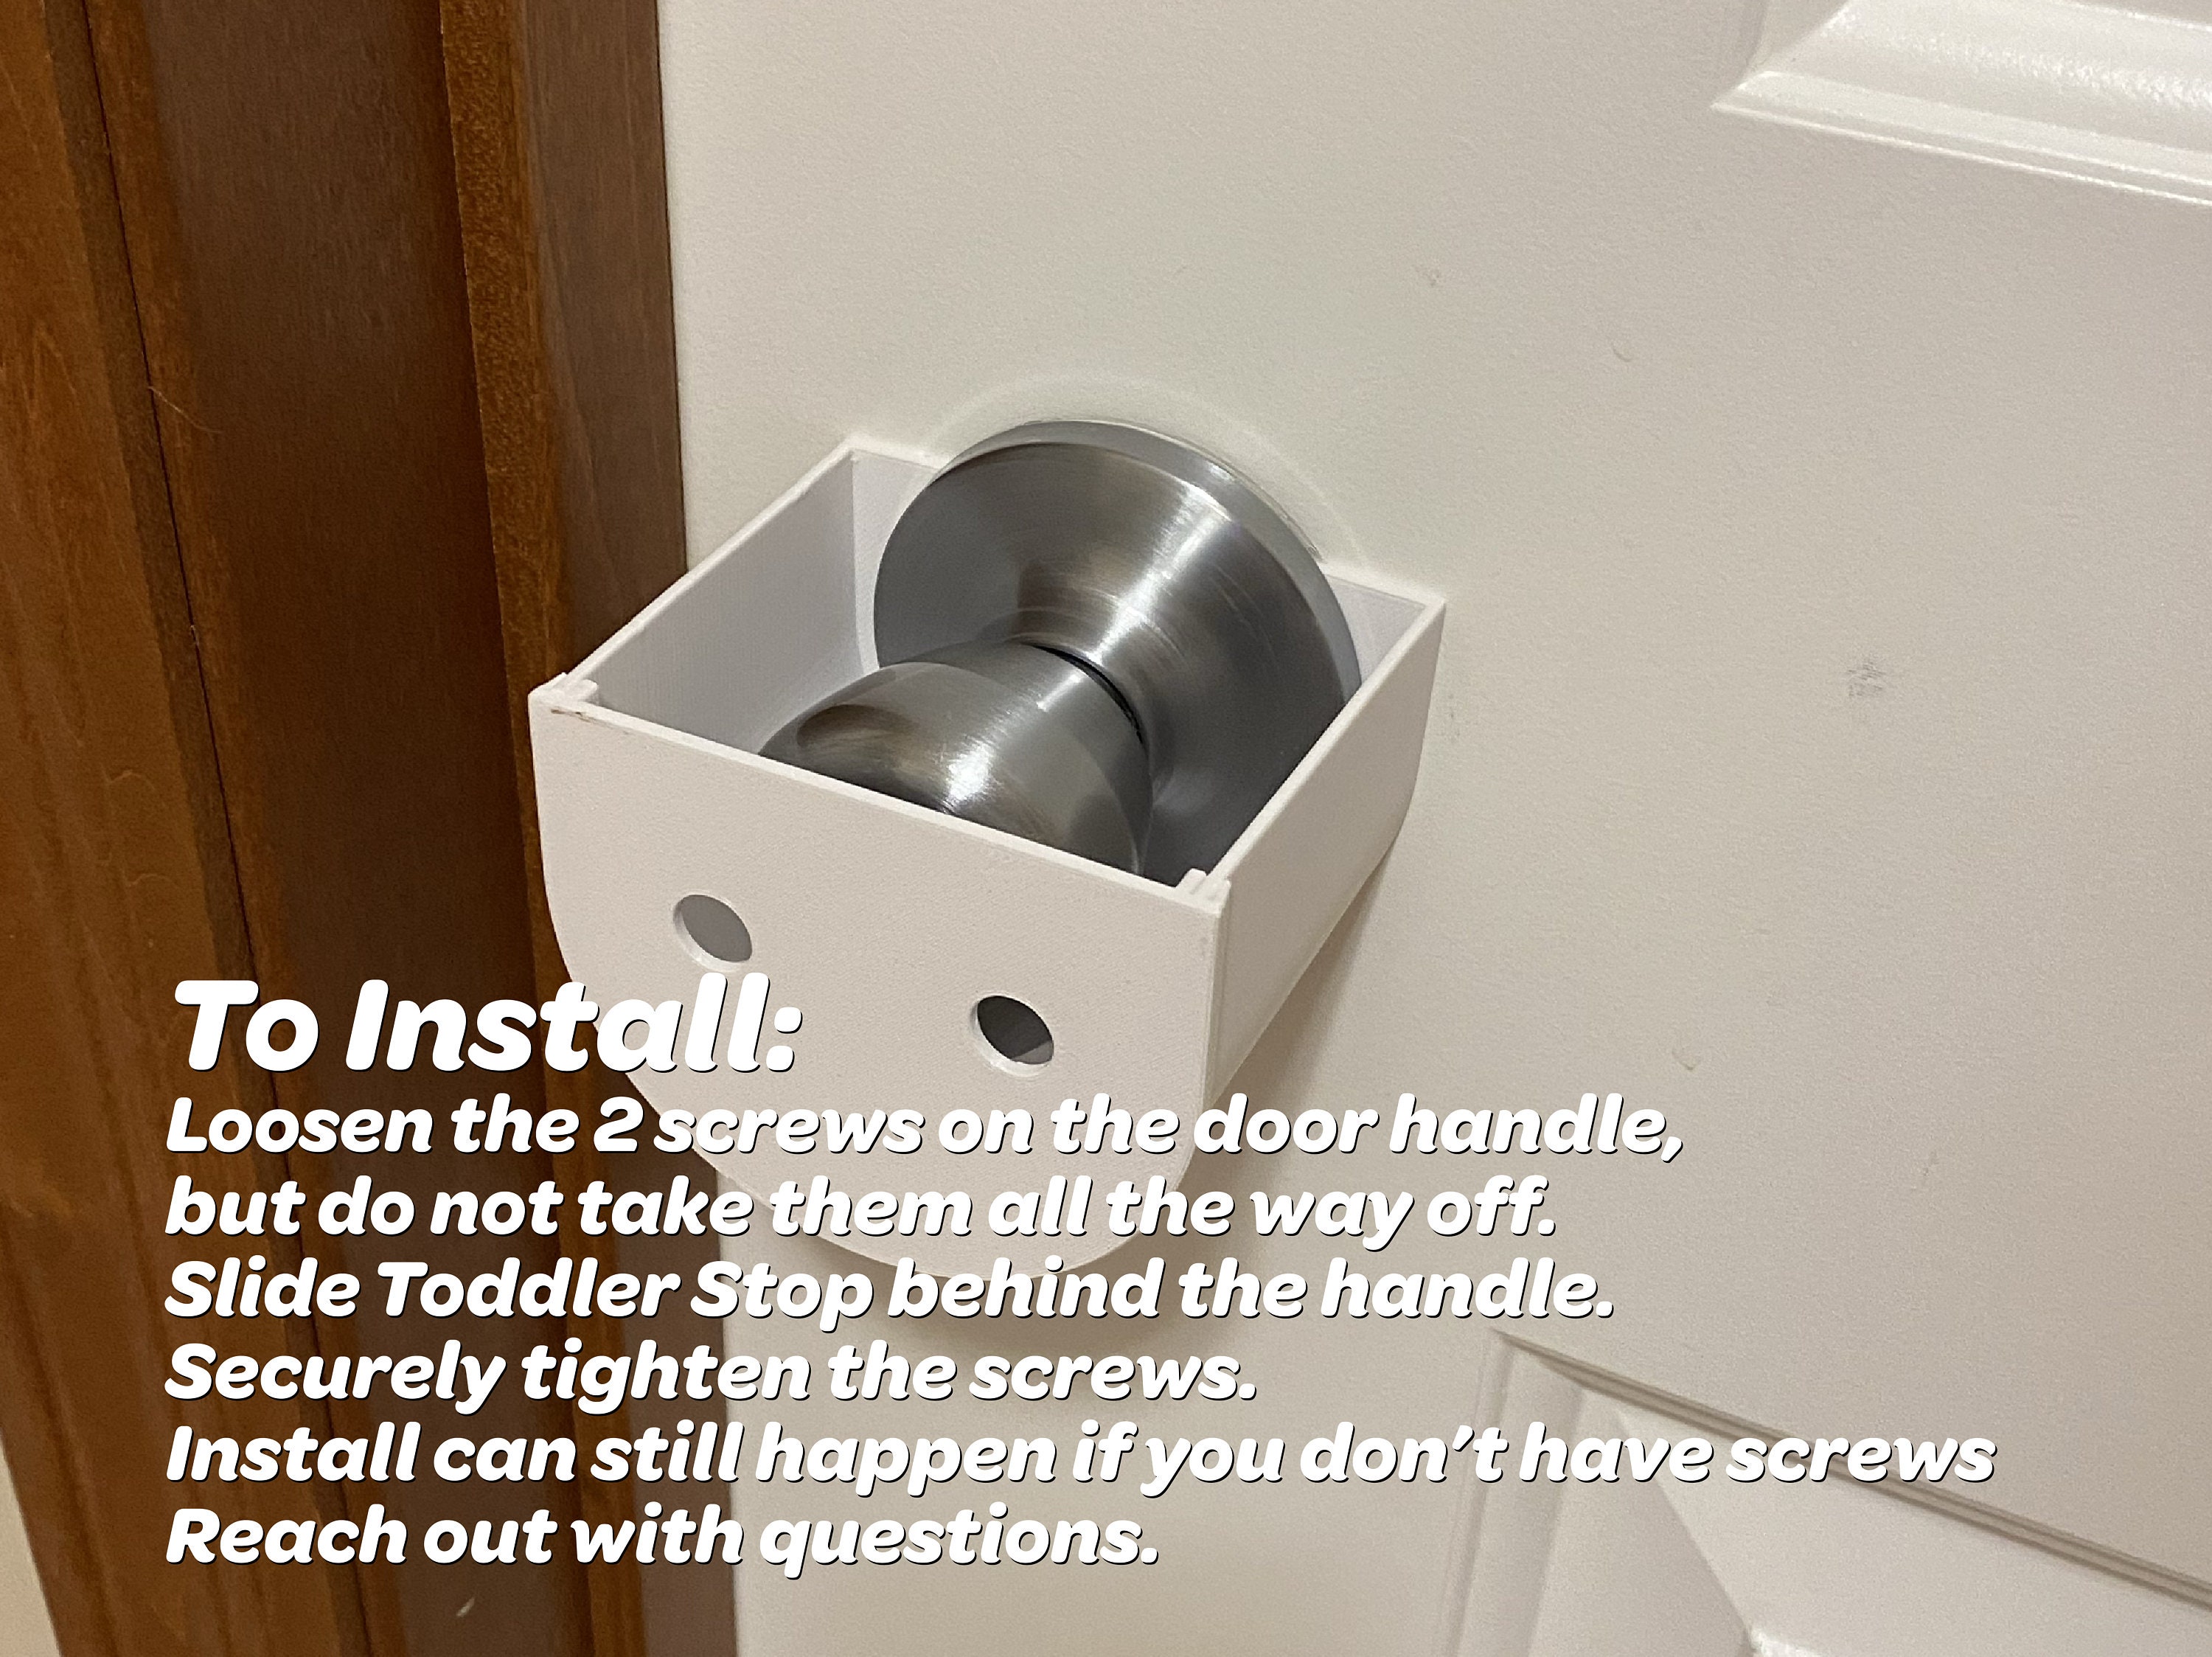 Child Proof Door Lever Lock No Adhesive Pet Proof Door Lever Lock Toddler  Proof Door Lock Door Handle Stop Toddlerstops -  Denmark